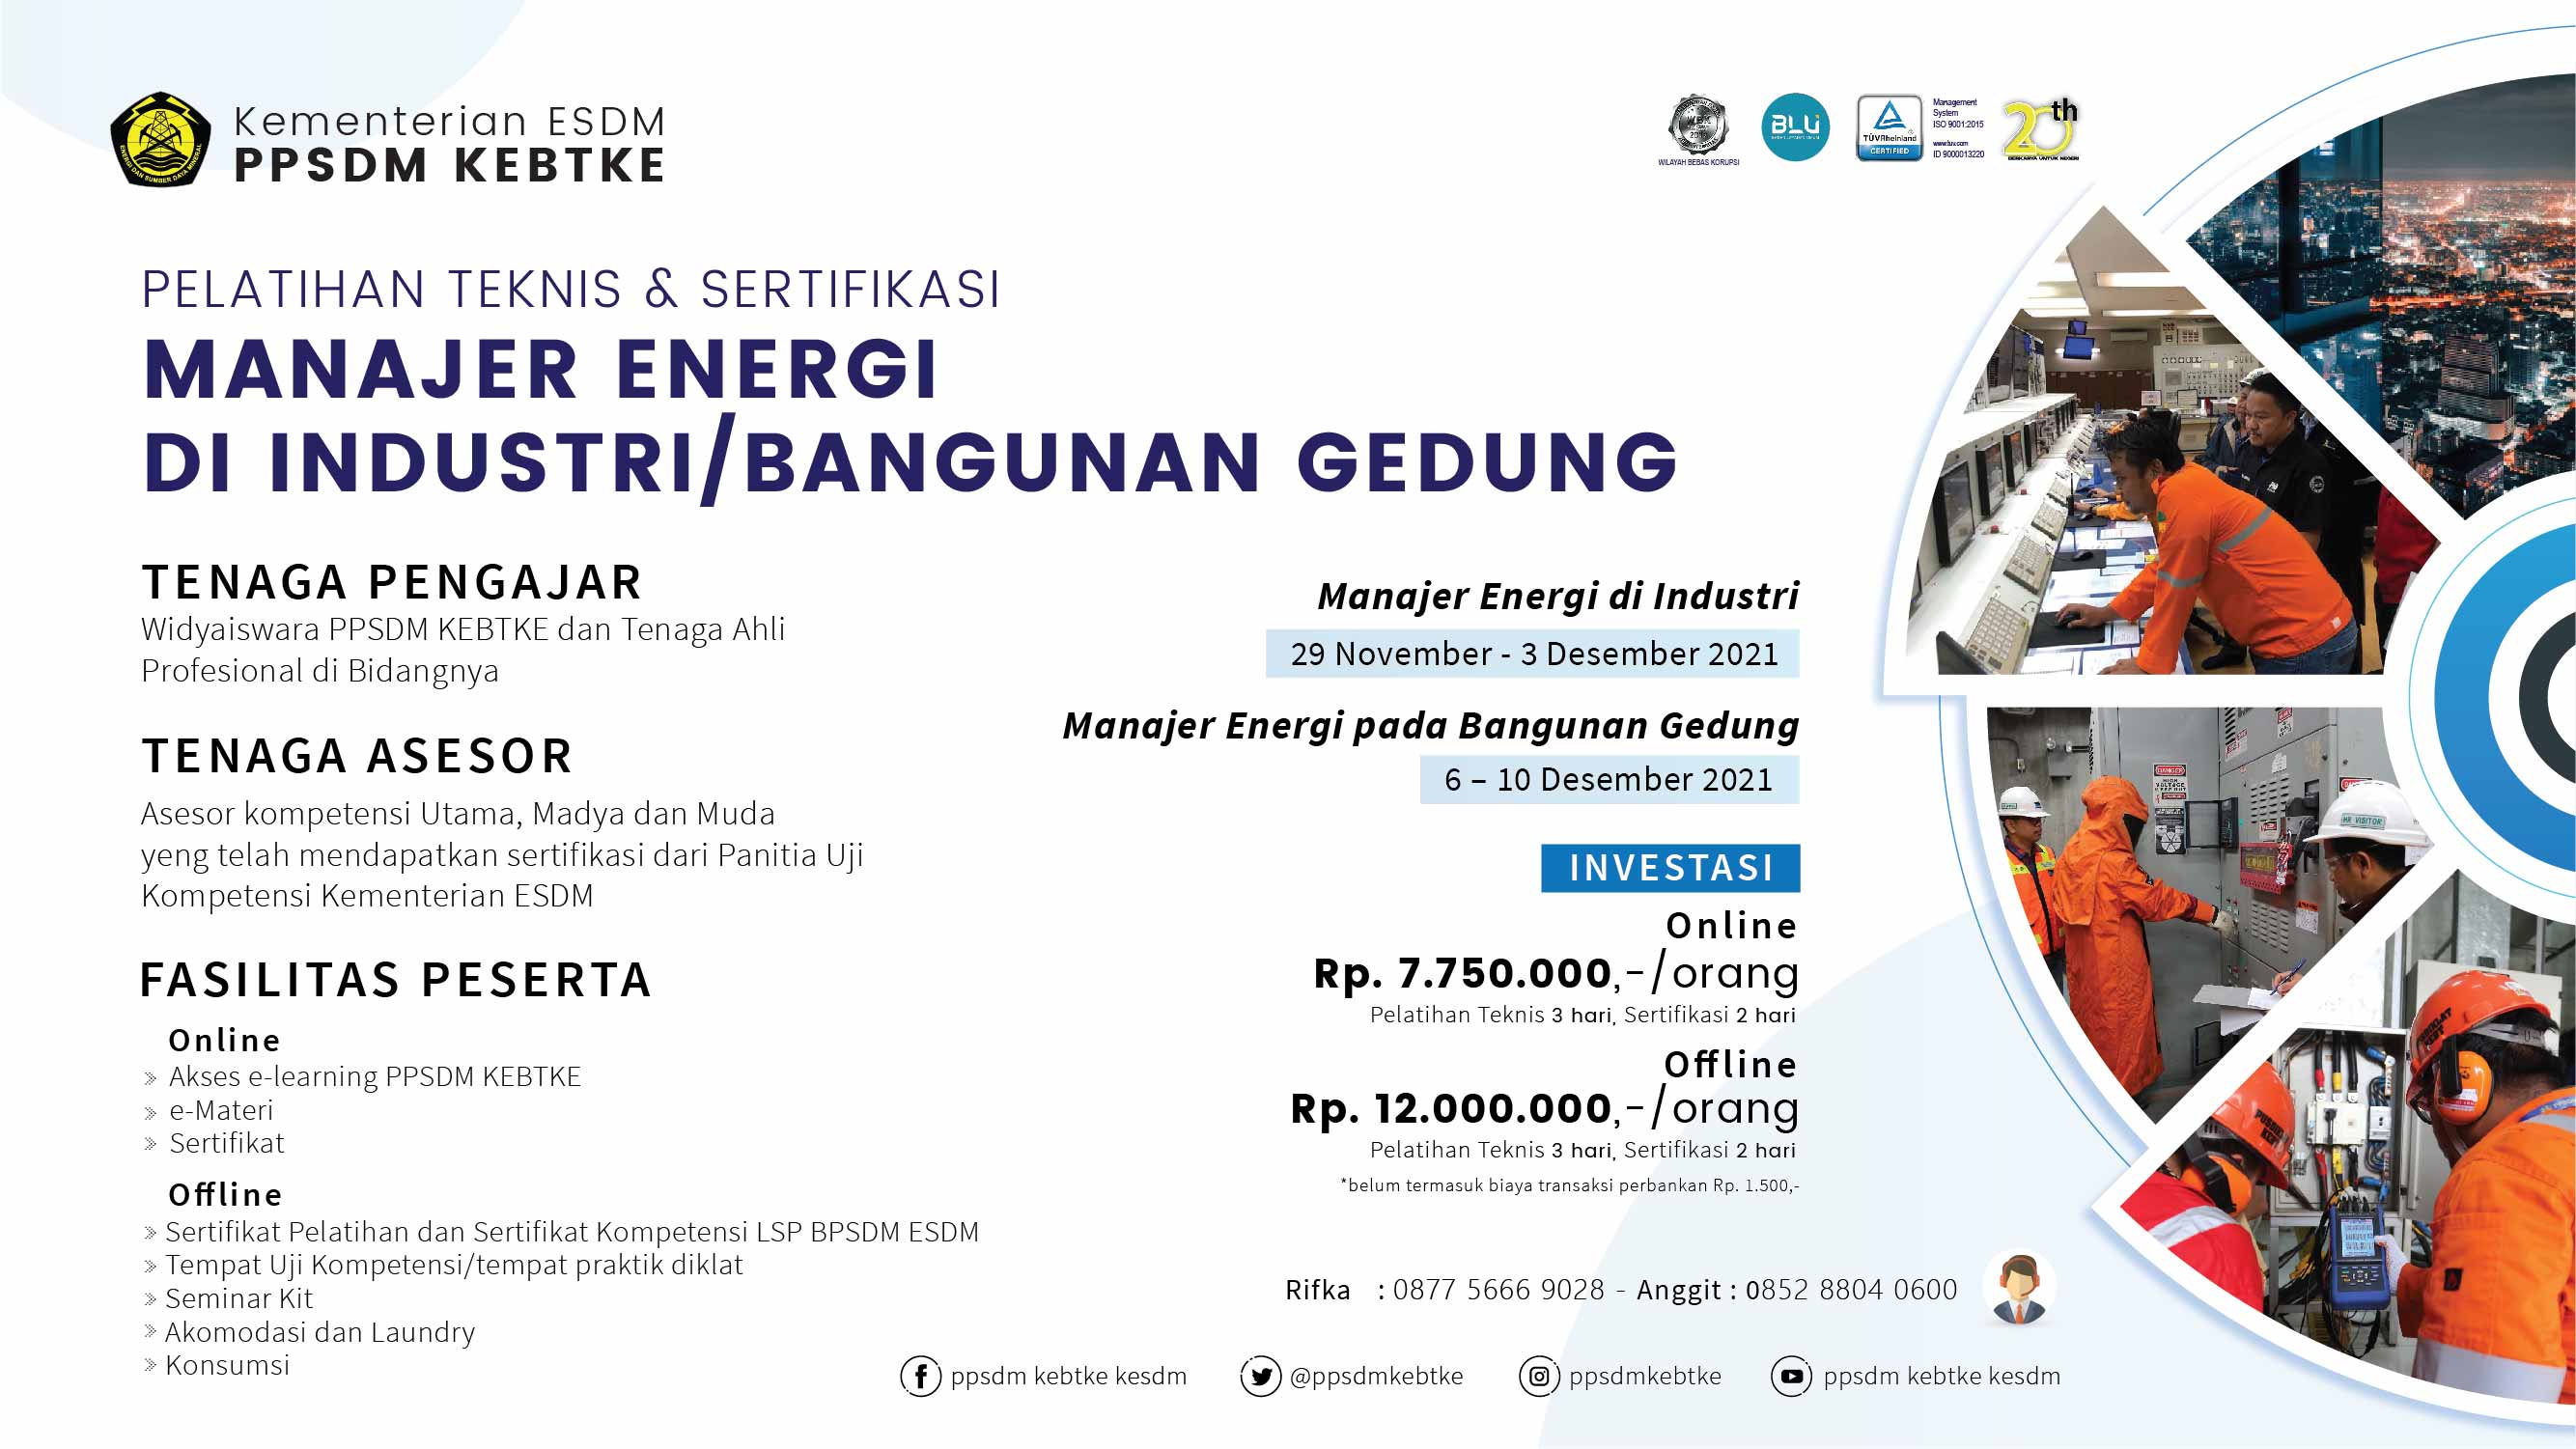 Pelatihan Teknis & Sertifikasi Manajer Energi (November - Desember 2021)